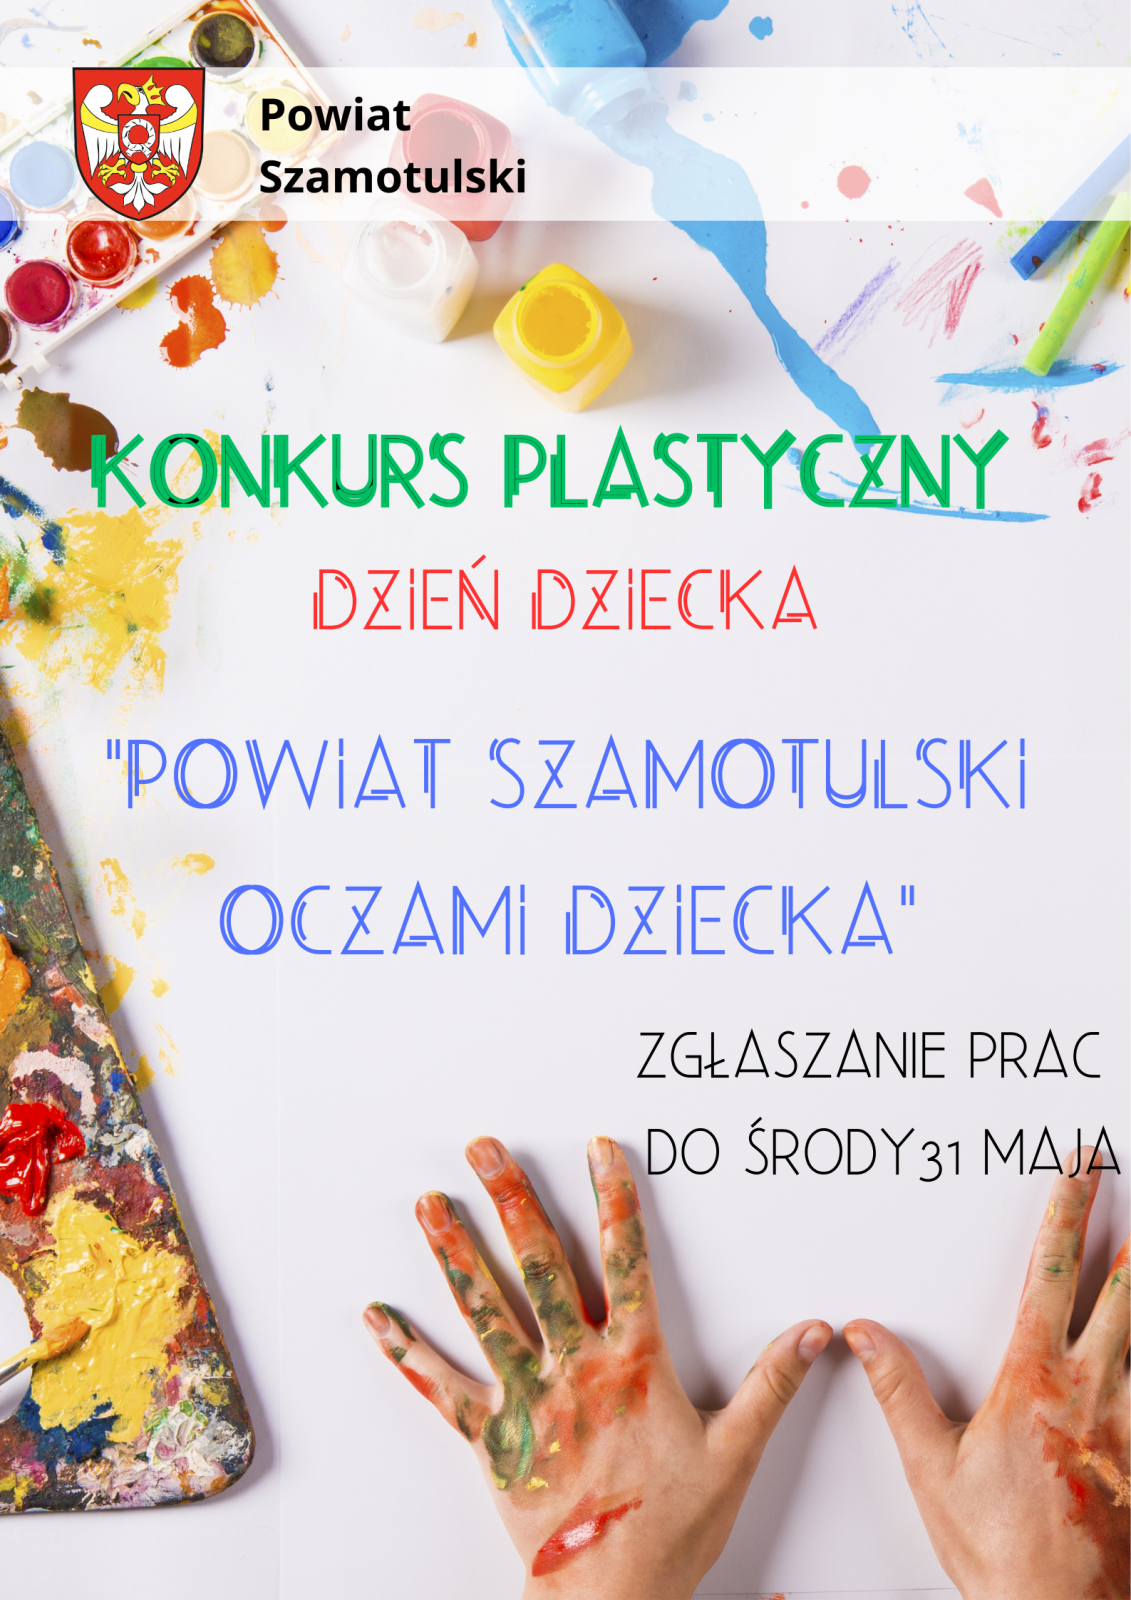 Konkurs Plastyczny z okazji Dnia Dziecka "Powiat Szamotulski oczami dziecka"